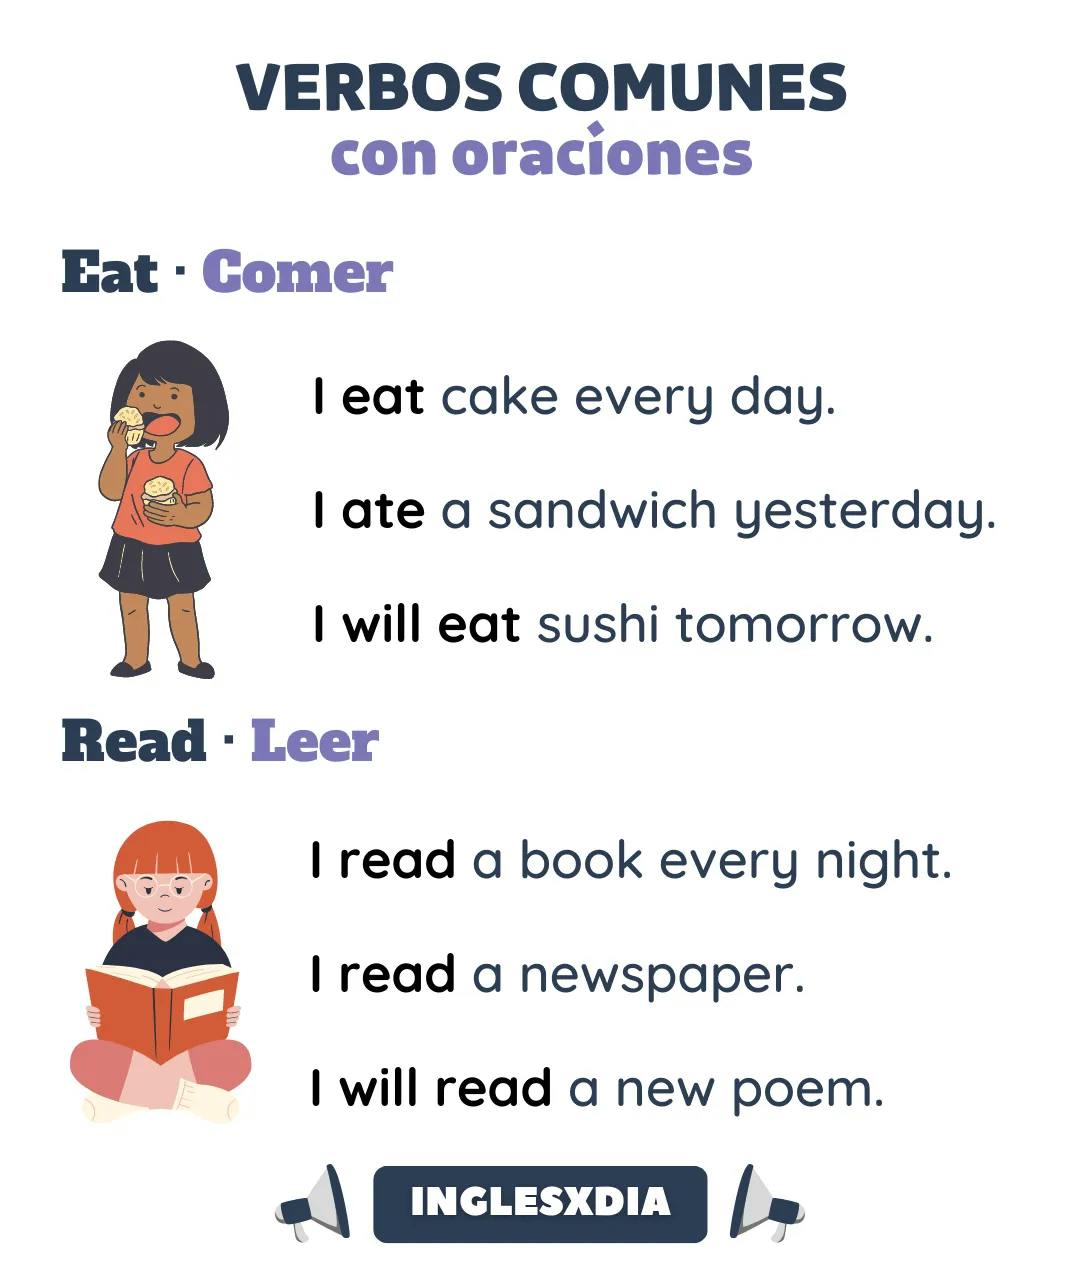 Tiempos verbales: eat/read